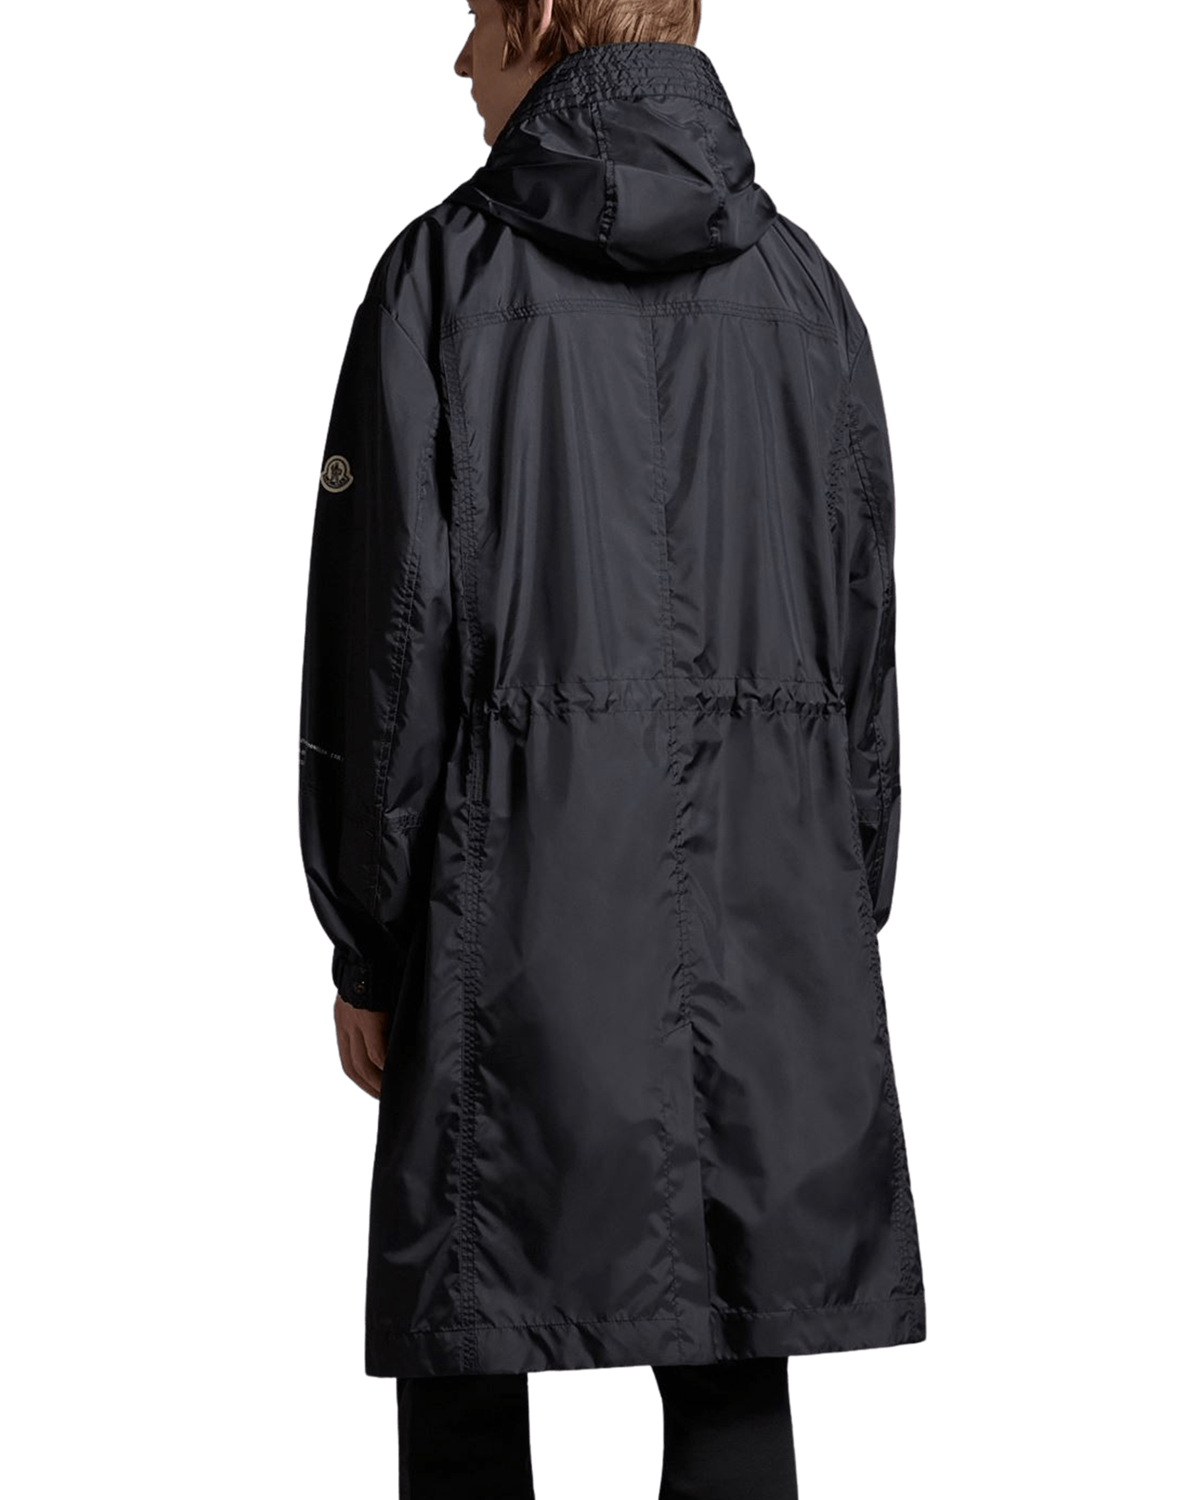 Fennel Long Parka $1079 Moncler Genius Outerwear Technical Jackets Black